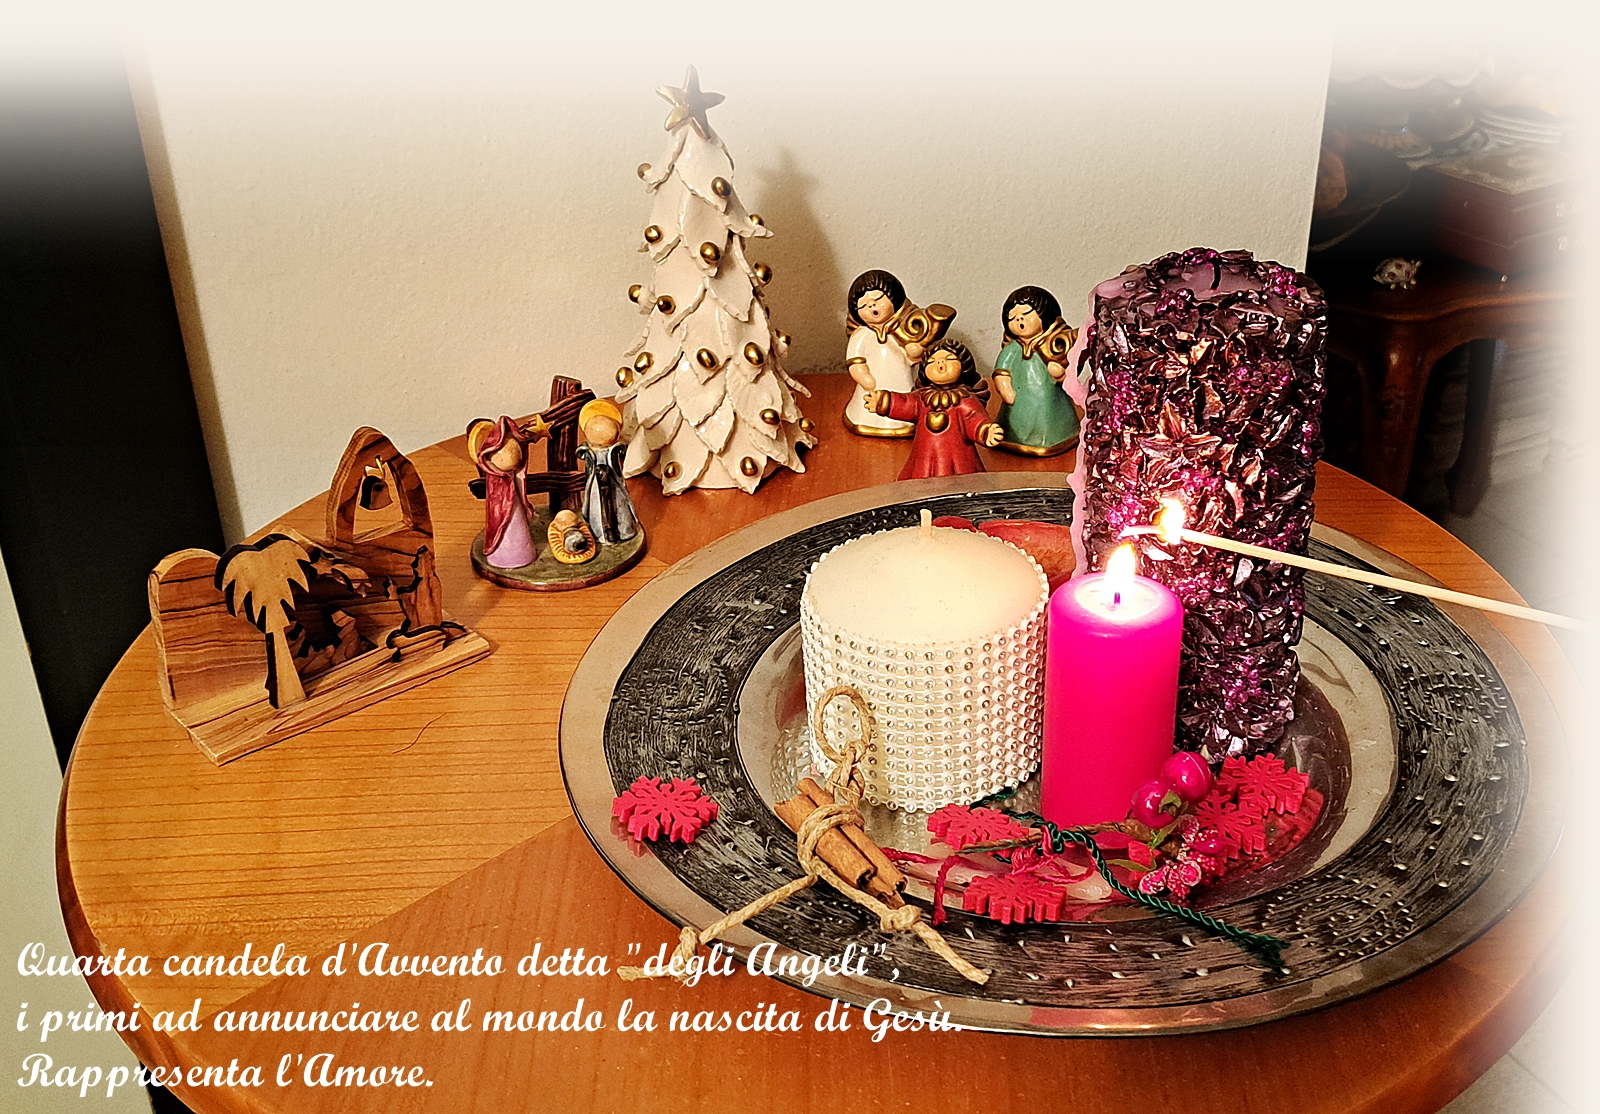 La quarta candela d'Avvento è detta "degli Angeli", i primi ad annunciare al mondo la nascita del Gesù.